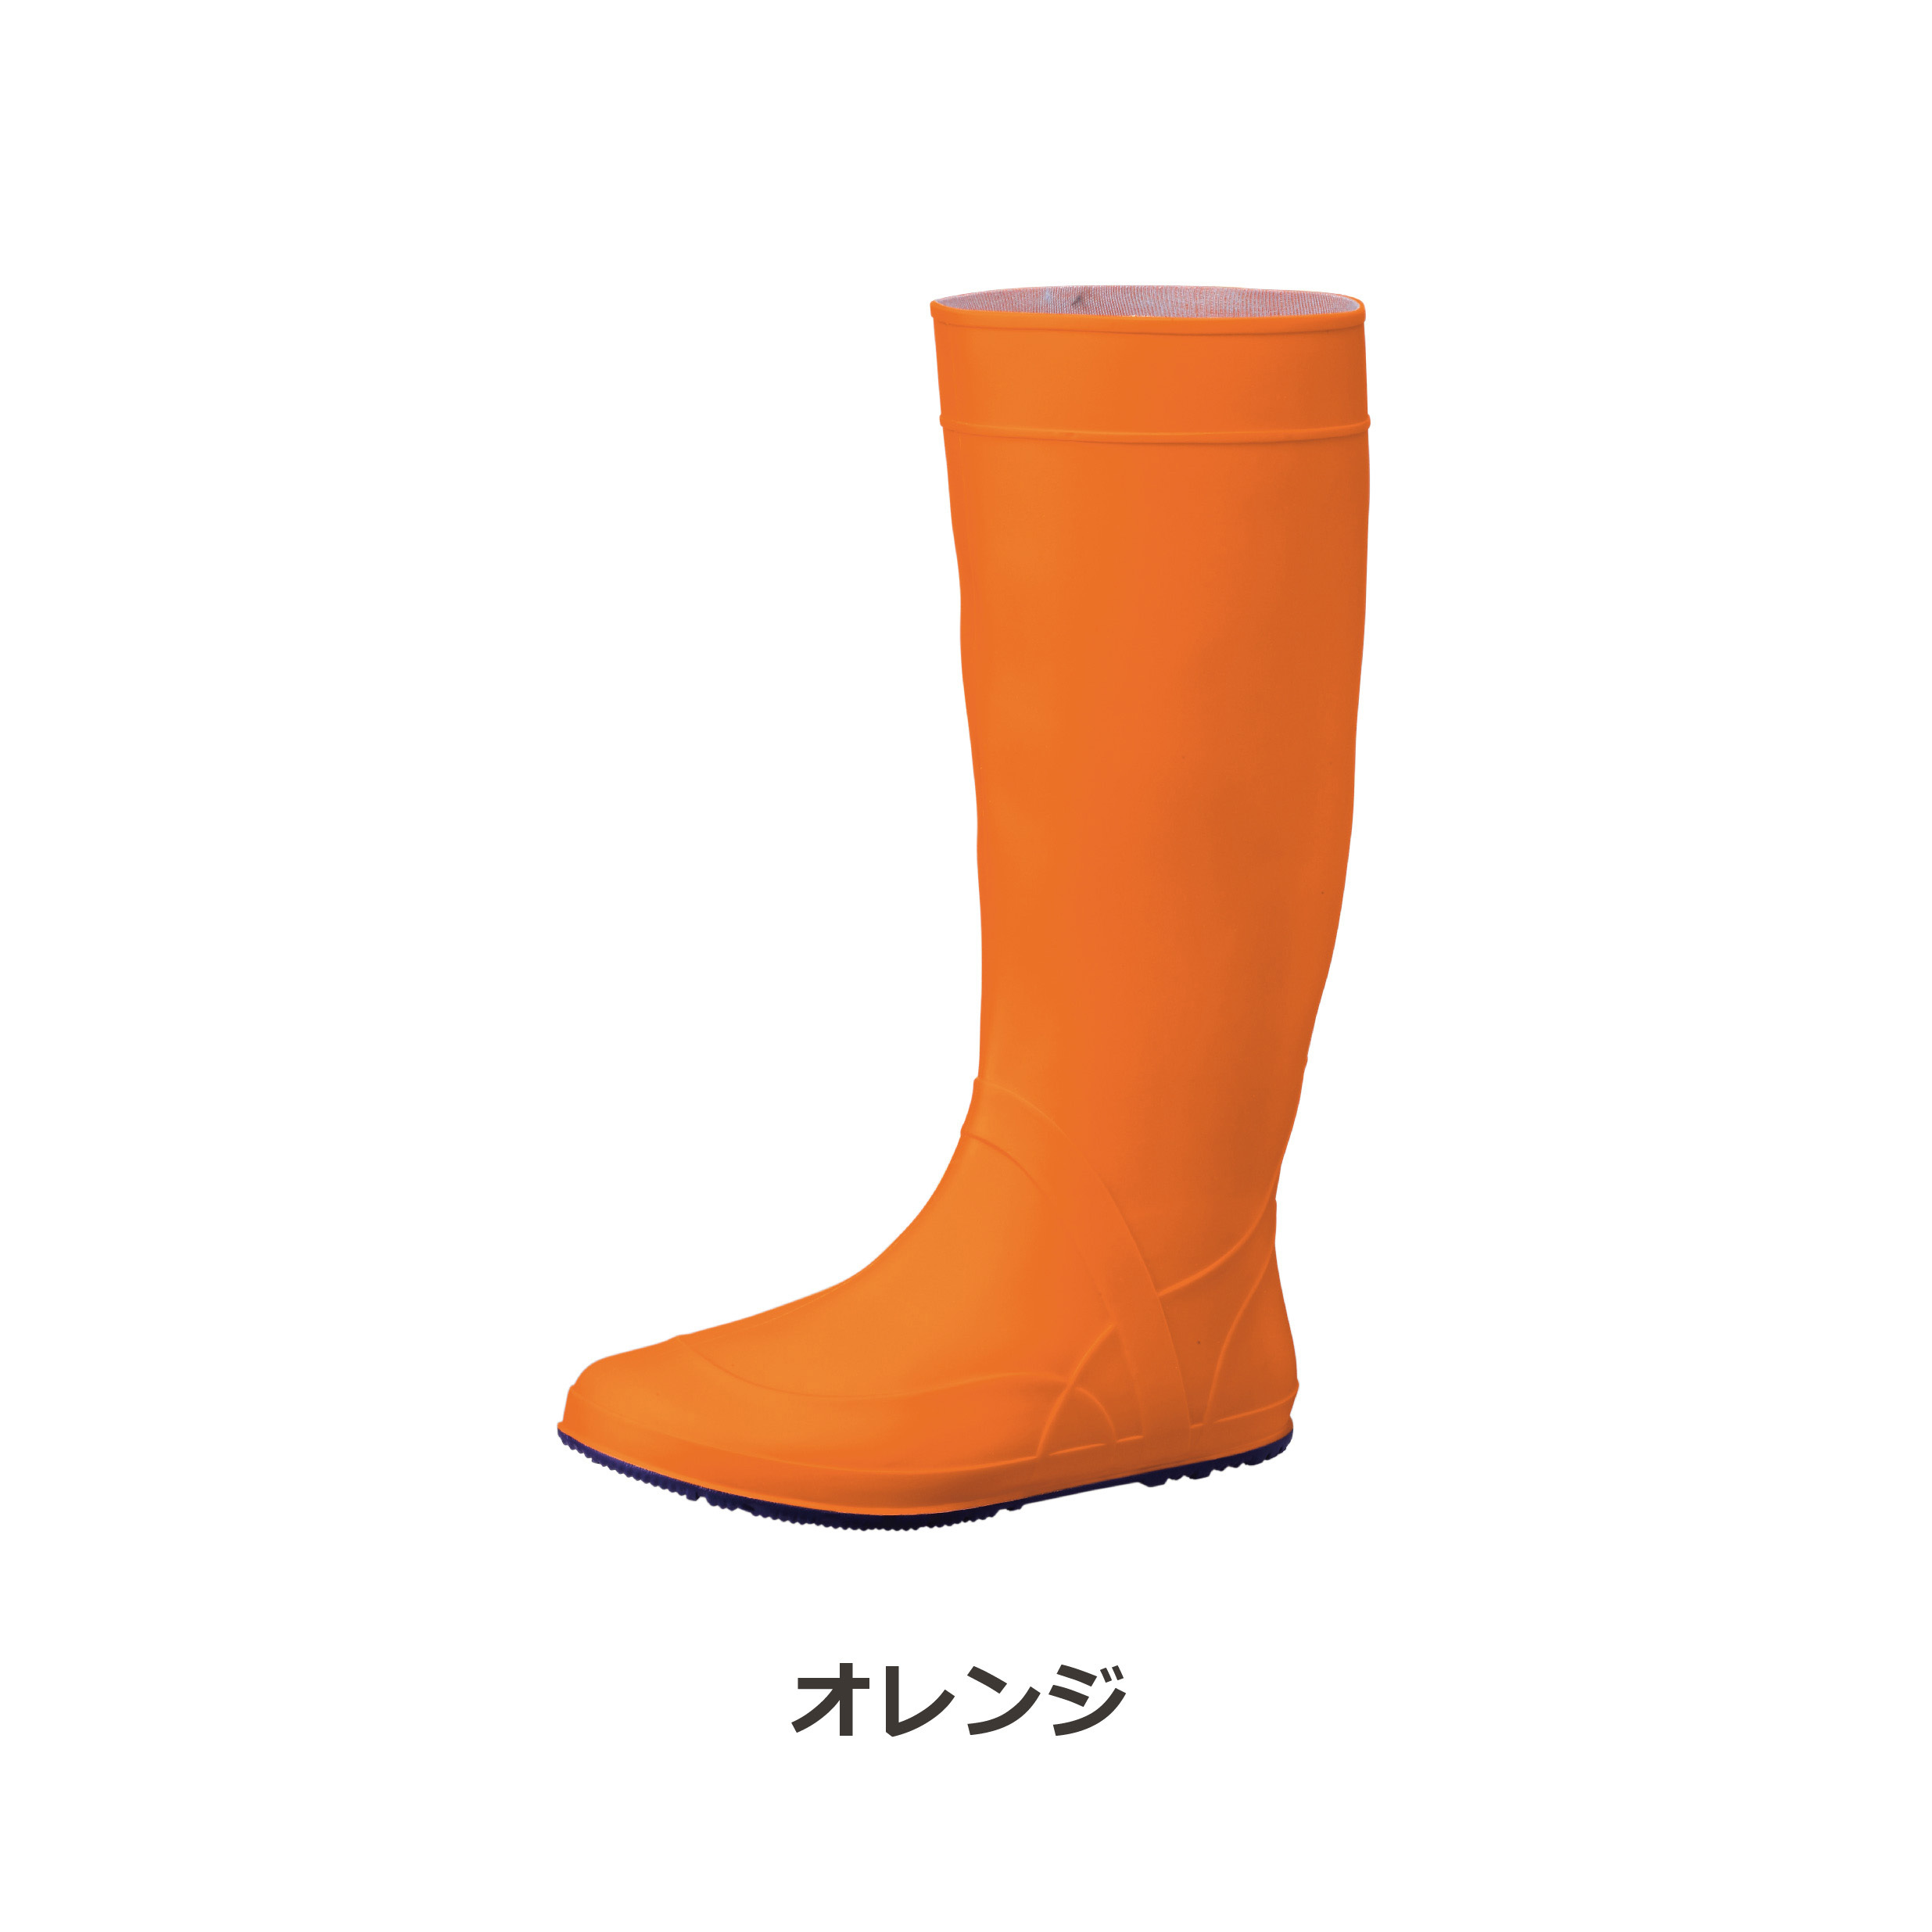 【送料無料！】タスカール TSK-1 ( ネイビー / オレンジ ) 福山ゴム 長靴 携帯 備蓄 防災 釣り 安全 防水 踏み抜き くるくる